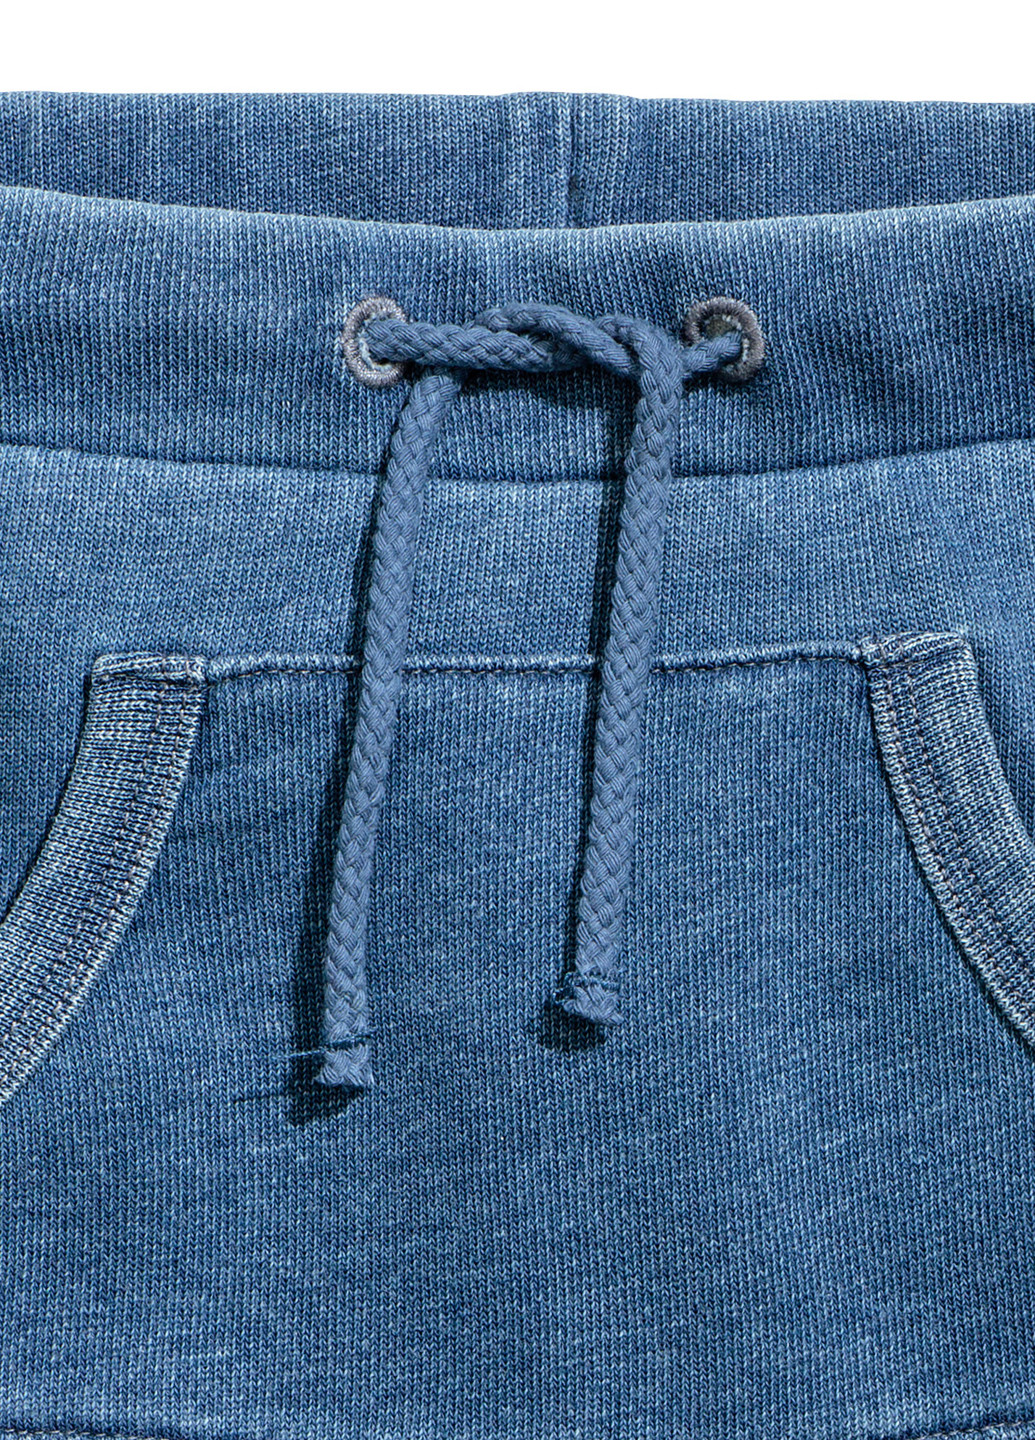 Шорты H&M высокая талия однотонные синие джинсовые